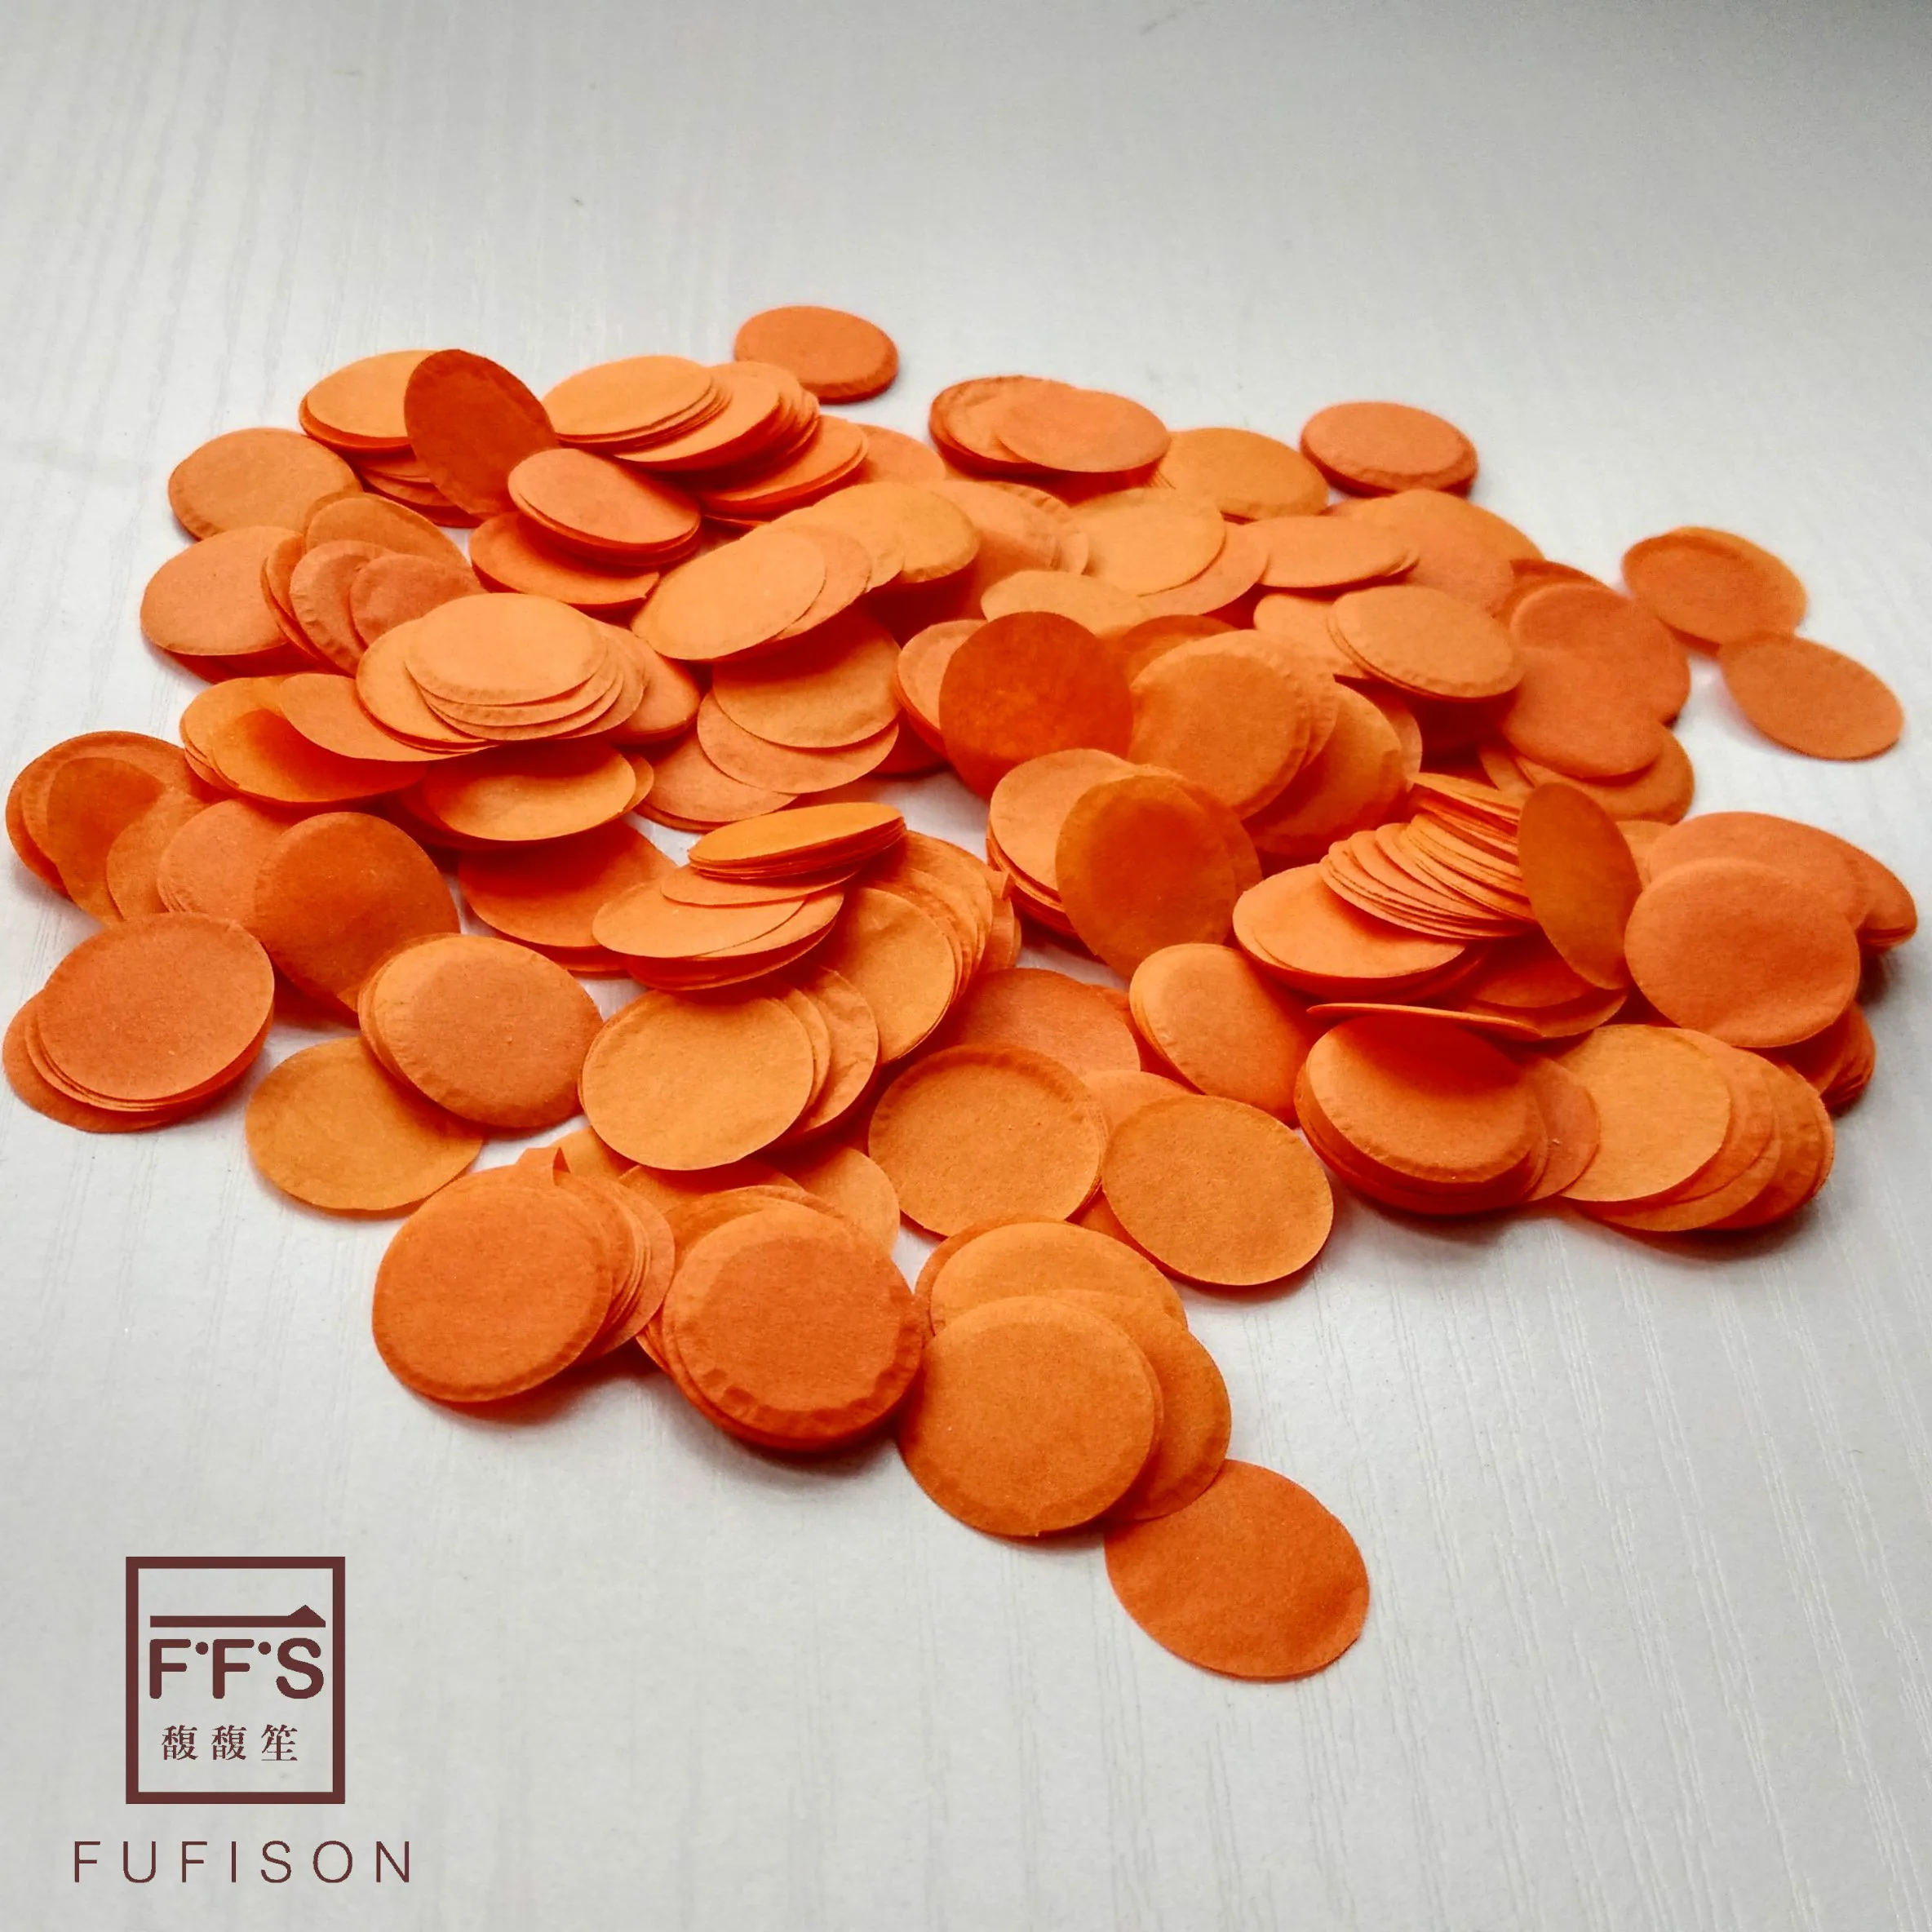 FFS 5 г(около 1000 шт) в пакете 1,6 см Круглые Конфетти из папиросной бумаги украшения свадебного стола - Цвет: Orange